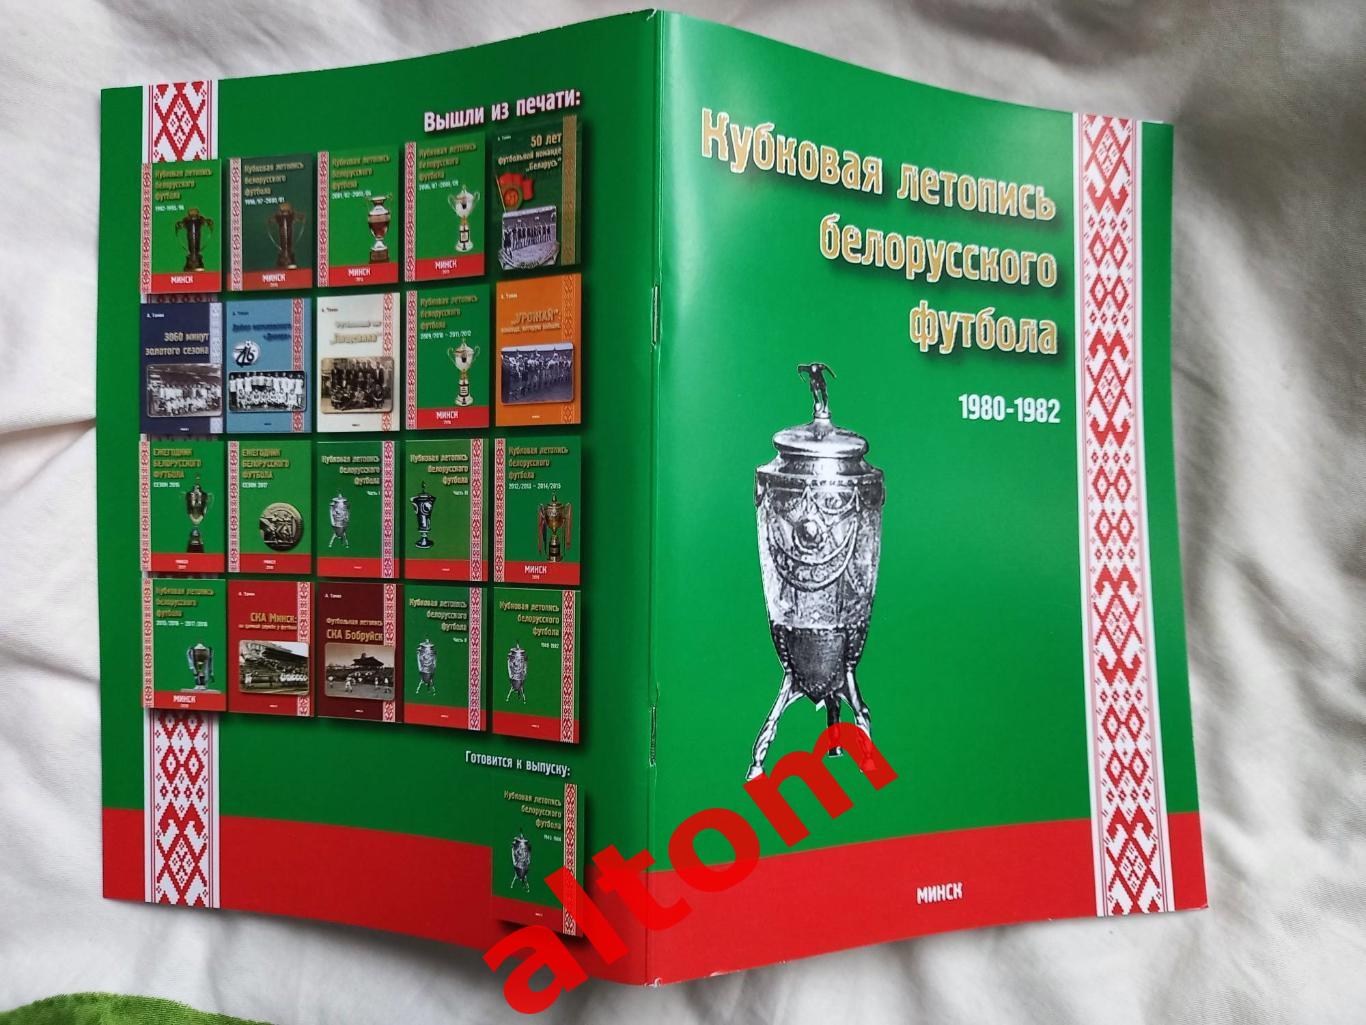 Белорусские команды в Кубке СССР 1980 - 1982. Минск. 2022